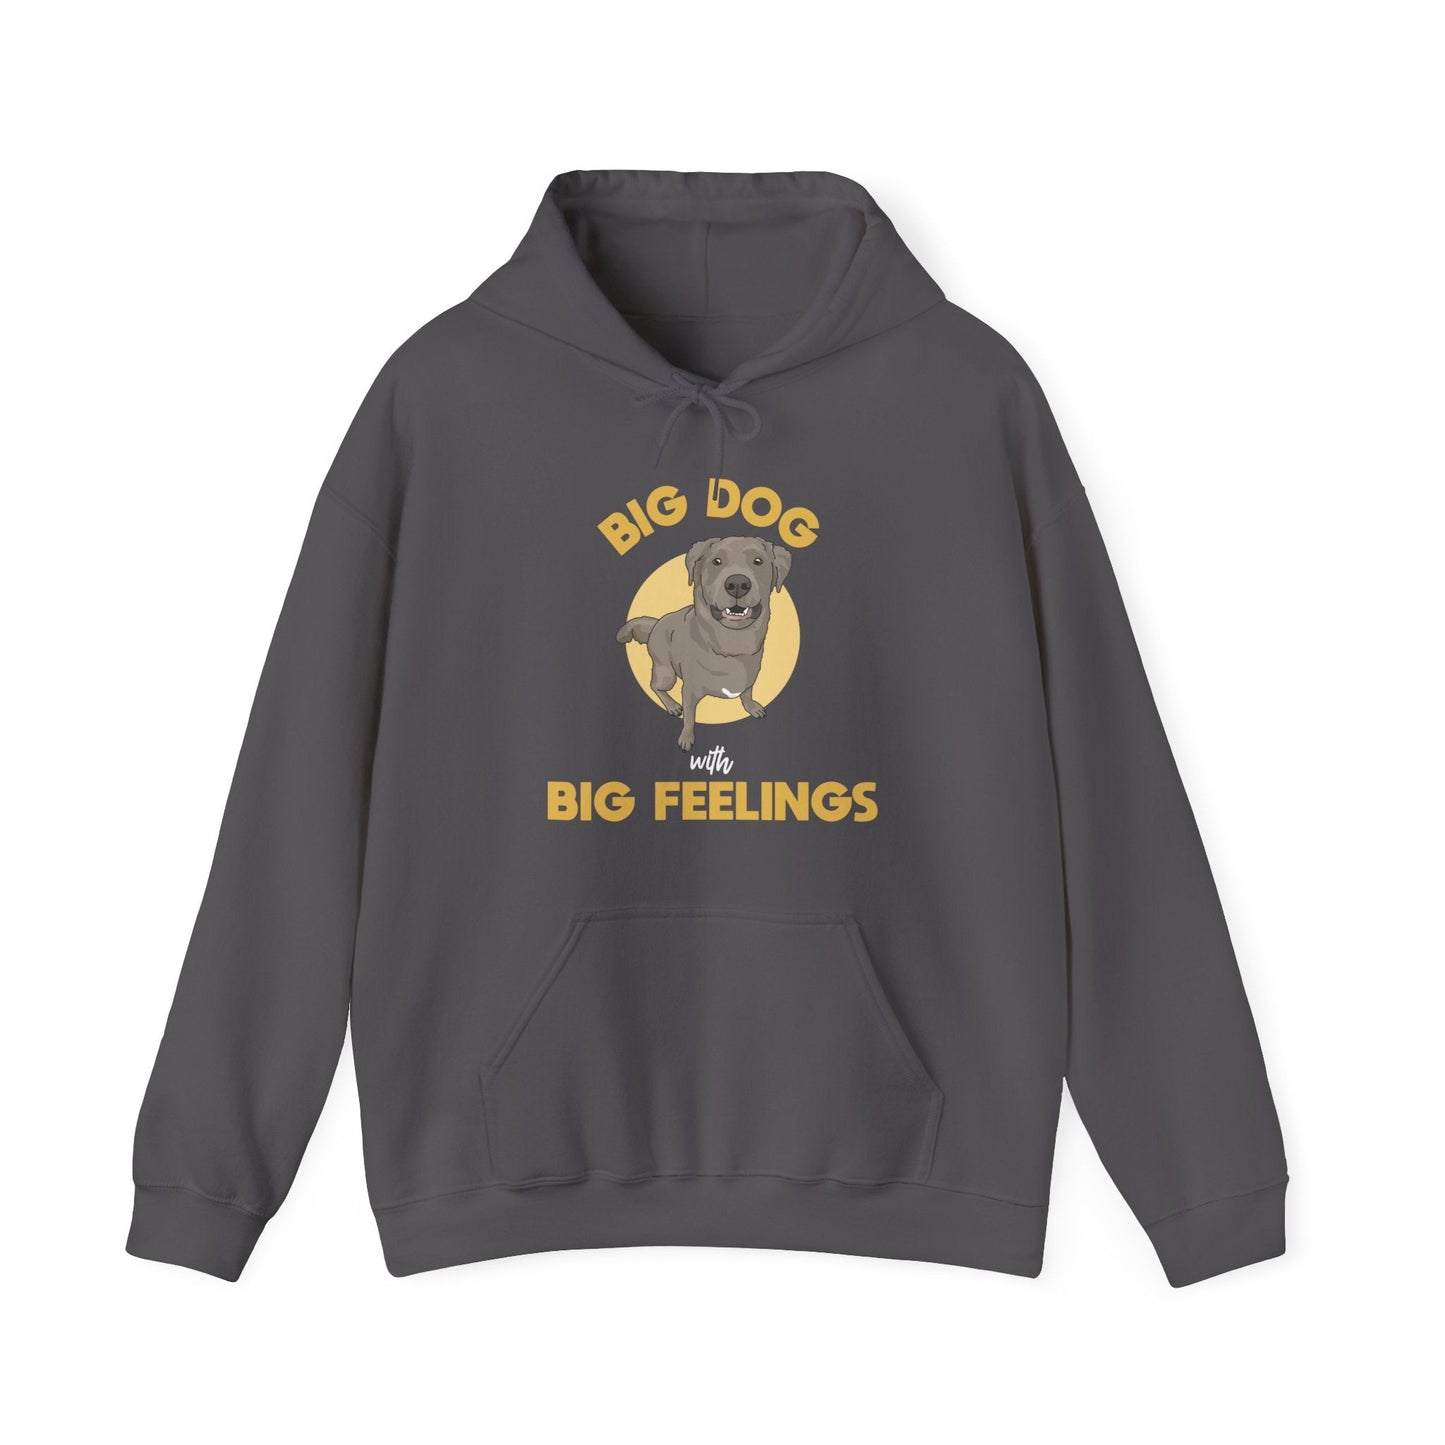 Big Dog With Big Feelings | Hooded Sweatshirt - Detezi Designs-26812654043904608945